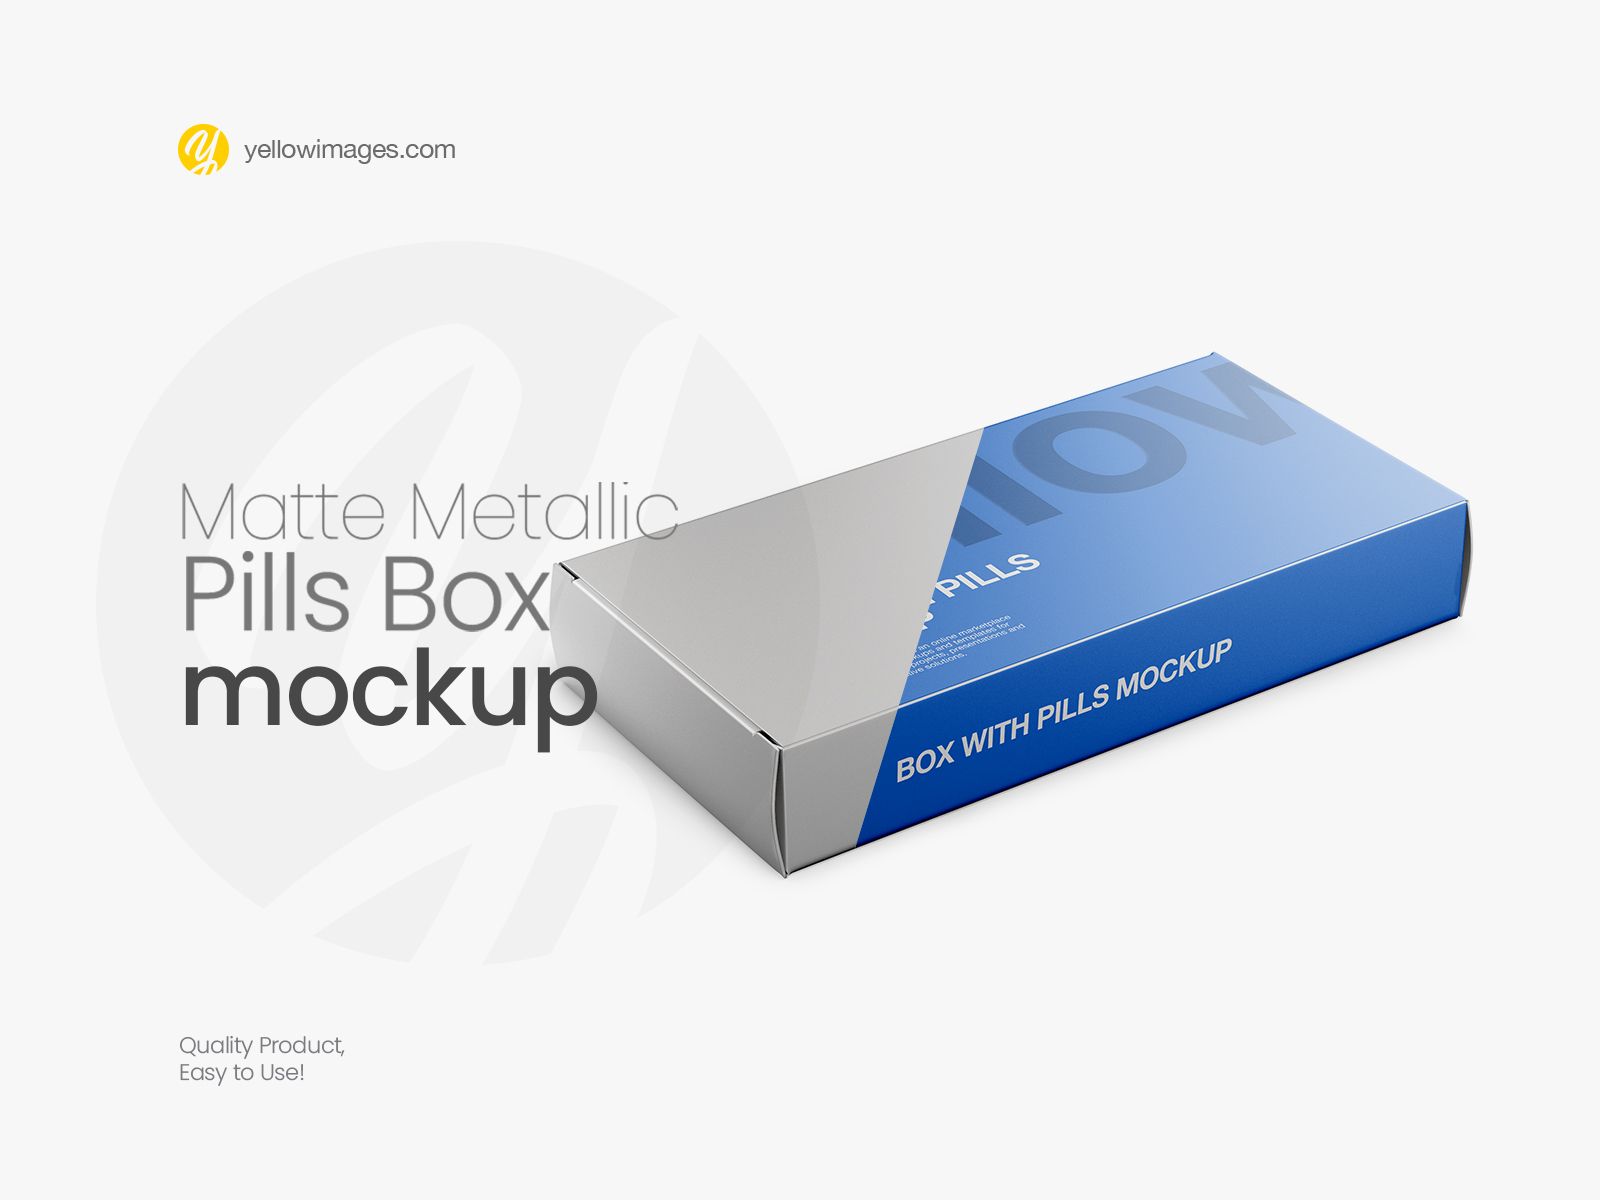 Download Matte Metallic Pills Box Mockup - Halfside View by Dmytro Ovcharenko on Dribbble